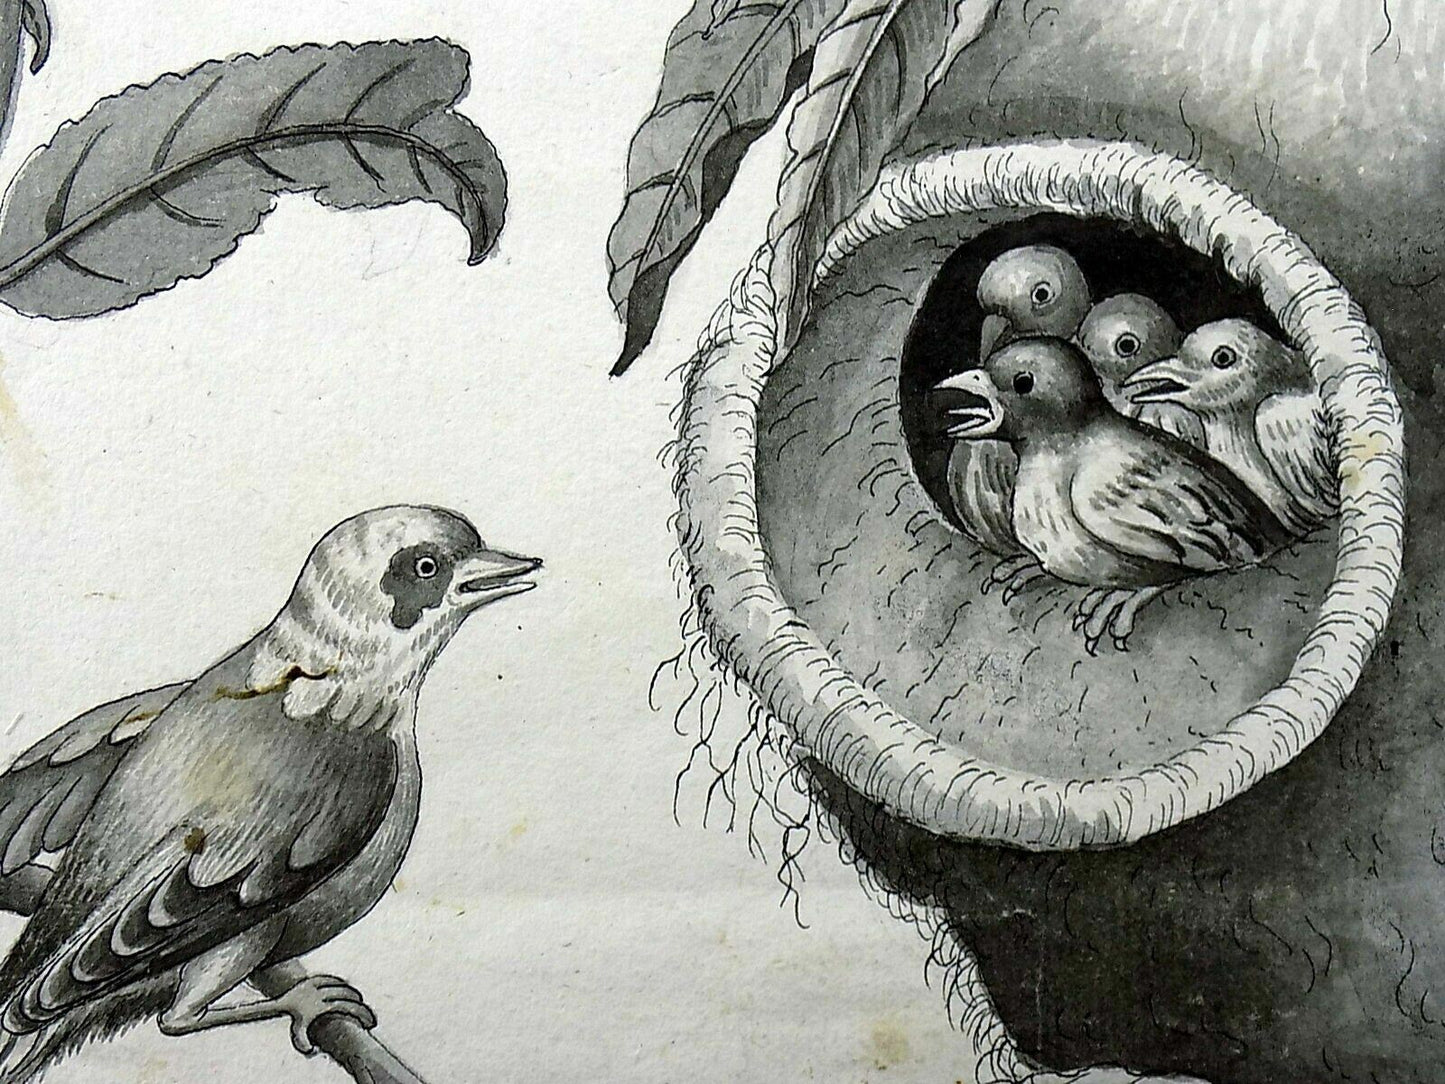 c 1790 Torcicollo con nido sospeso, matita e inchiostro di china, anonimo,